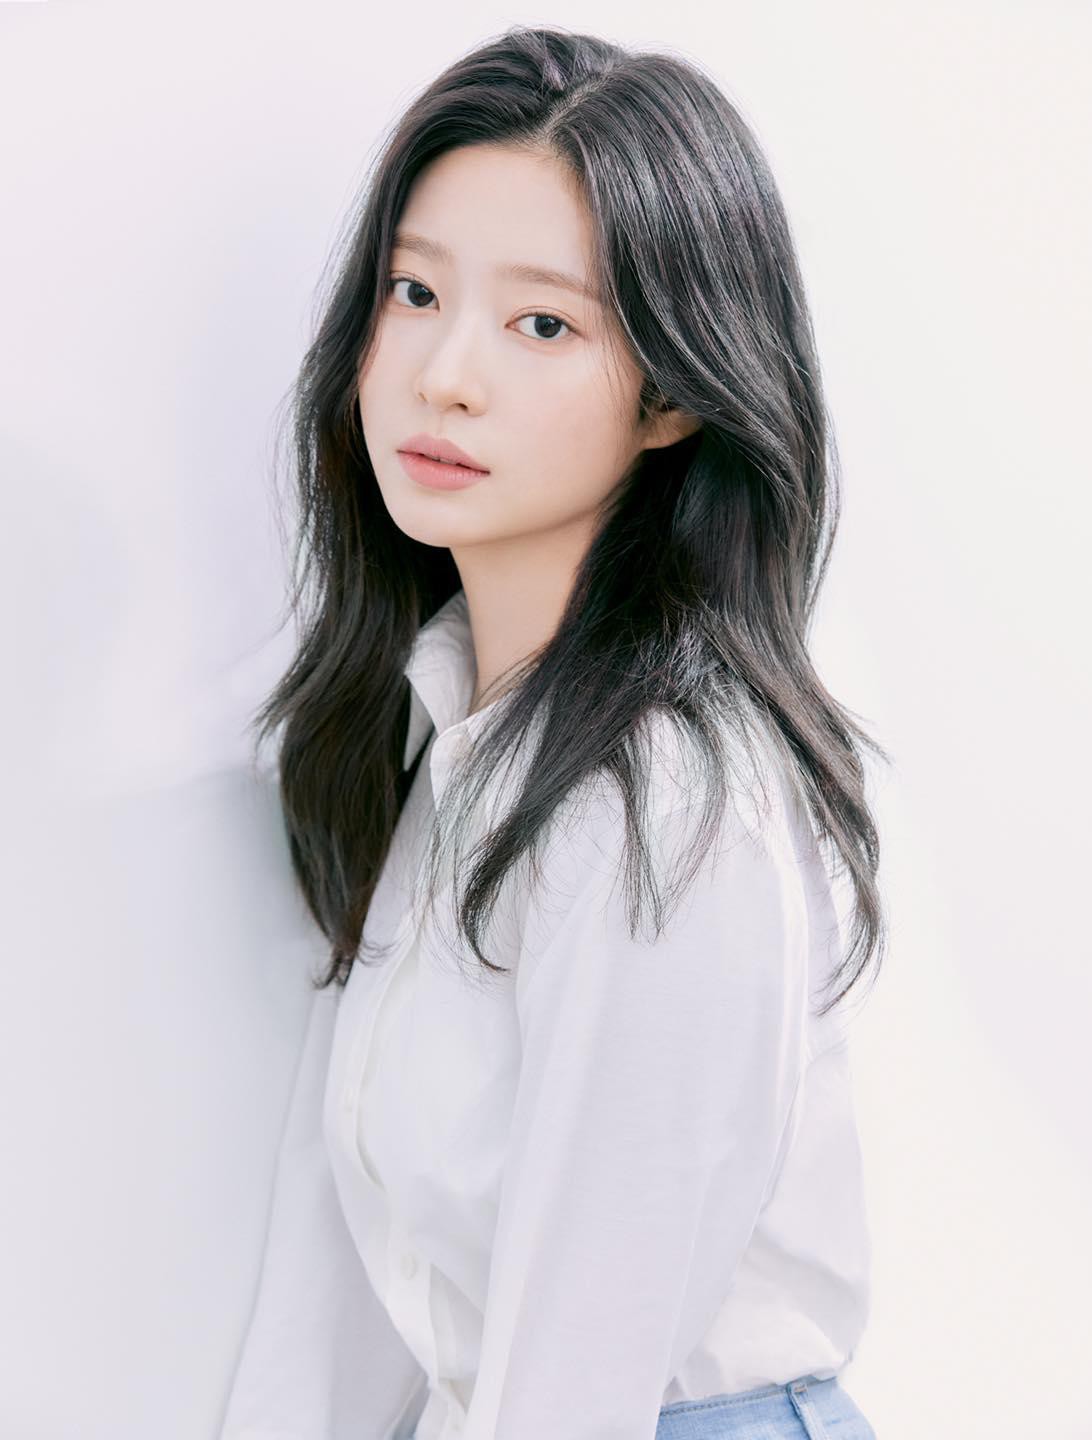 'Bản sao Tzuyu' Kim Min Ju tung bộ ảnh profile đơn giản mà đẹp xuất thần - Ảnh 2